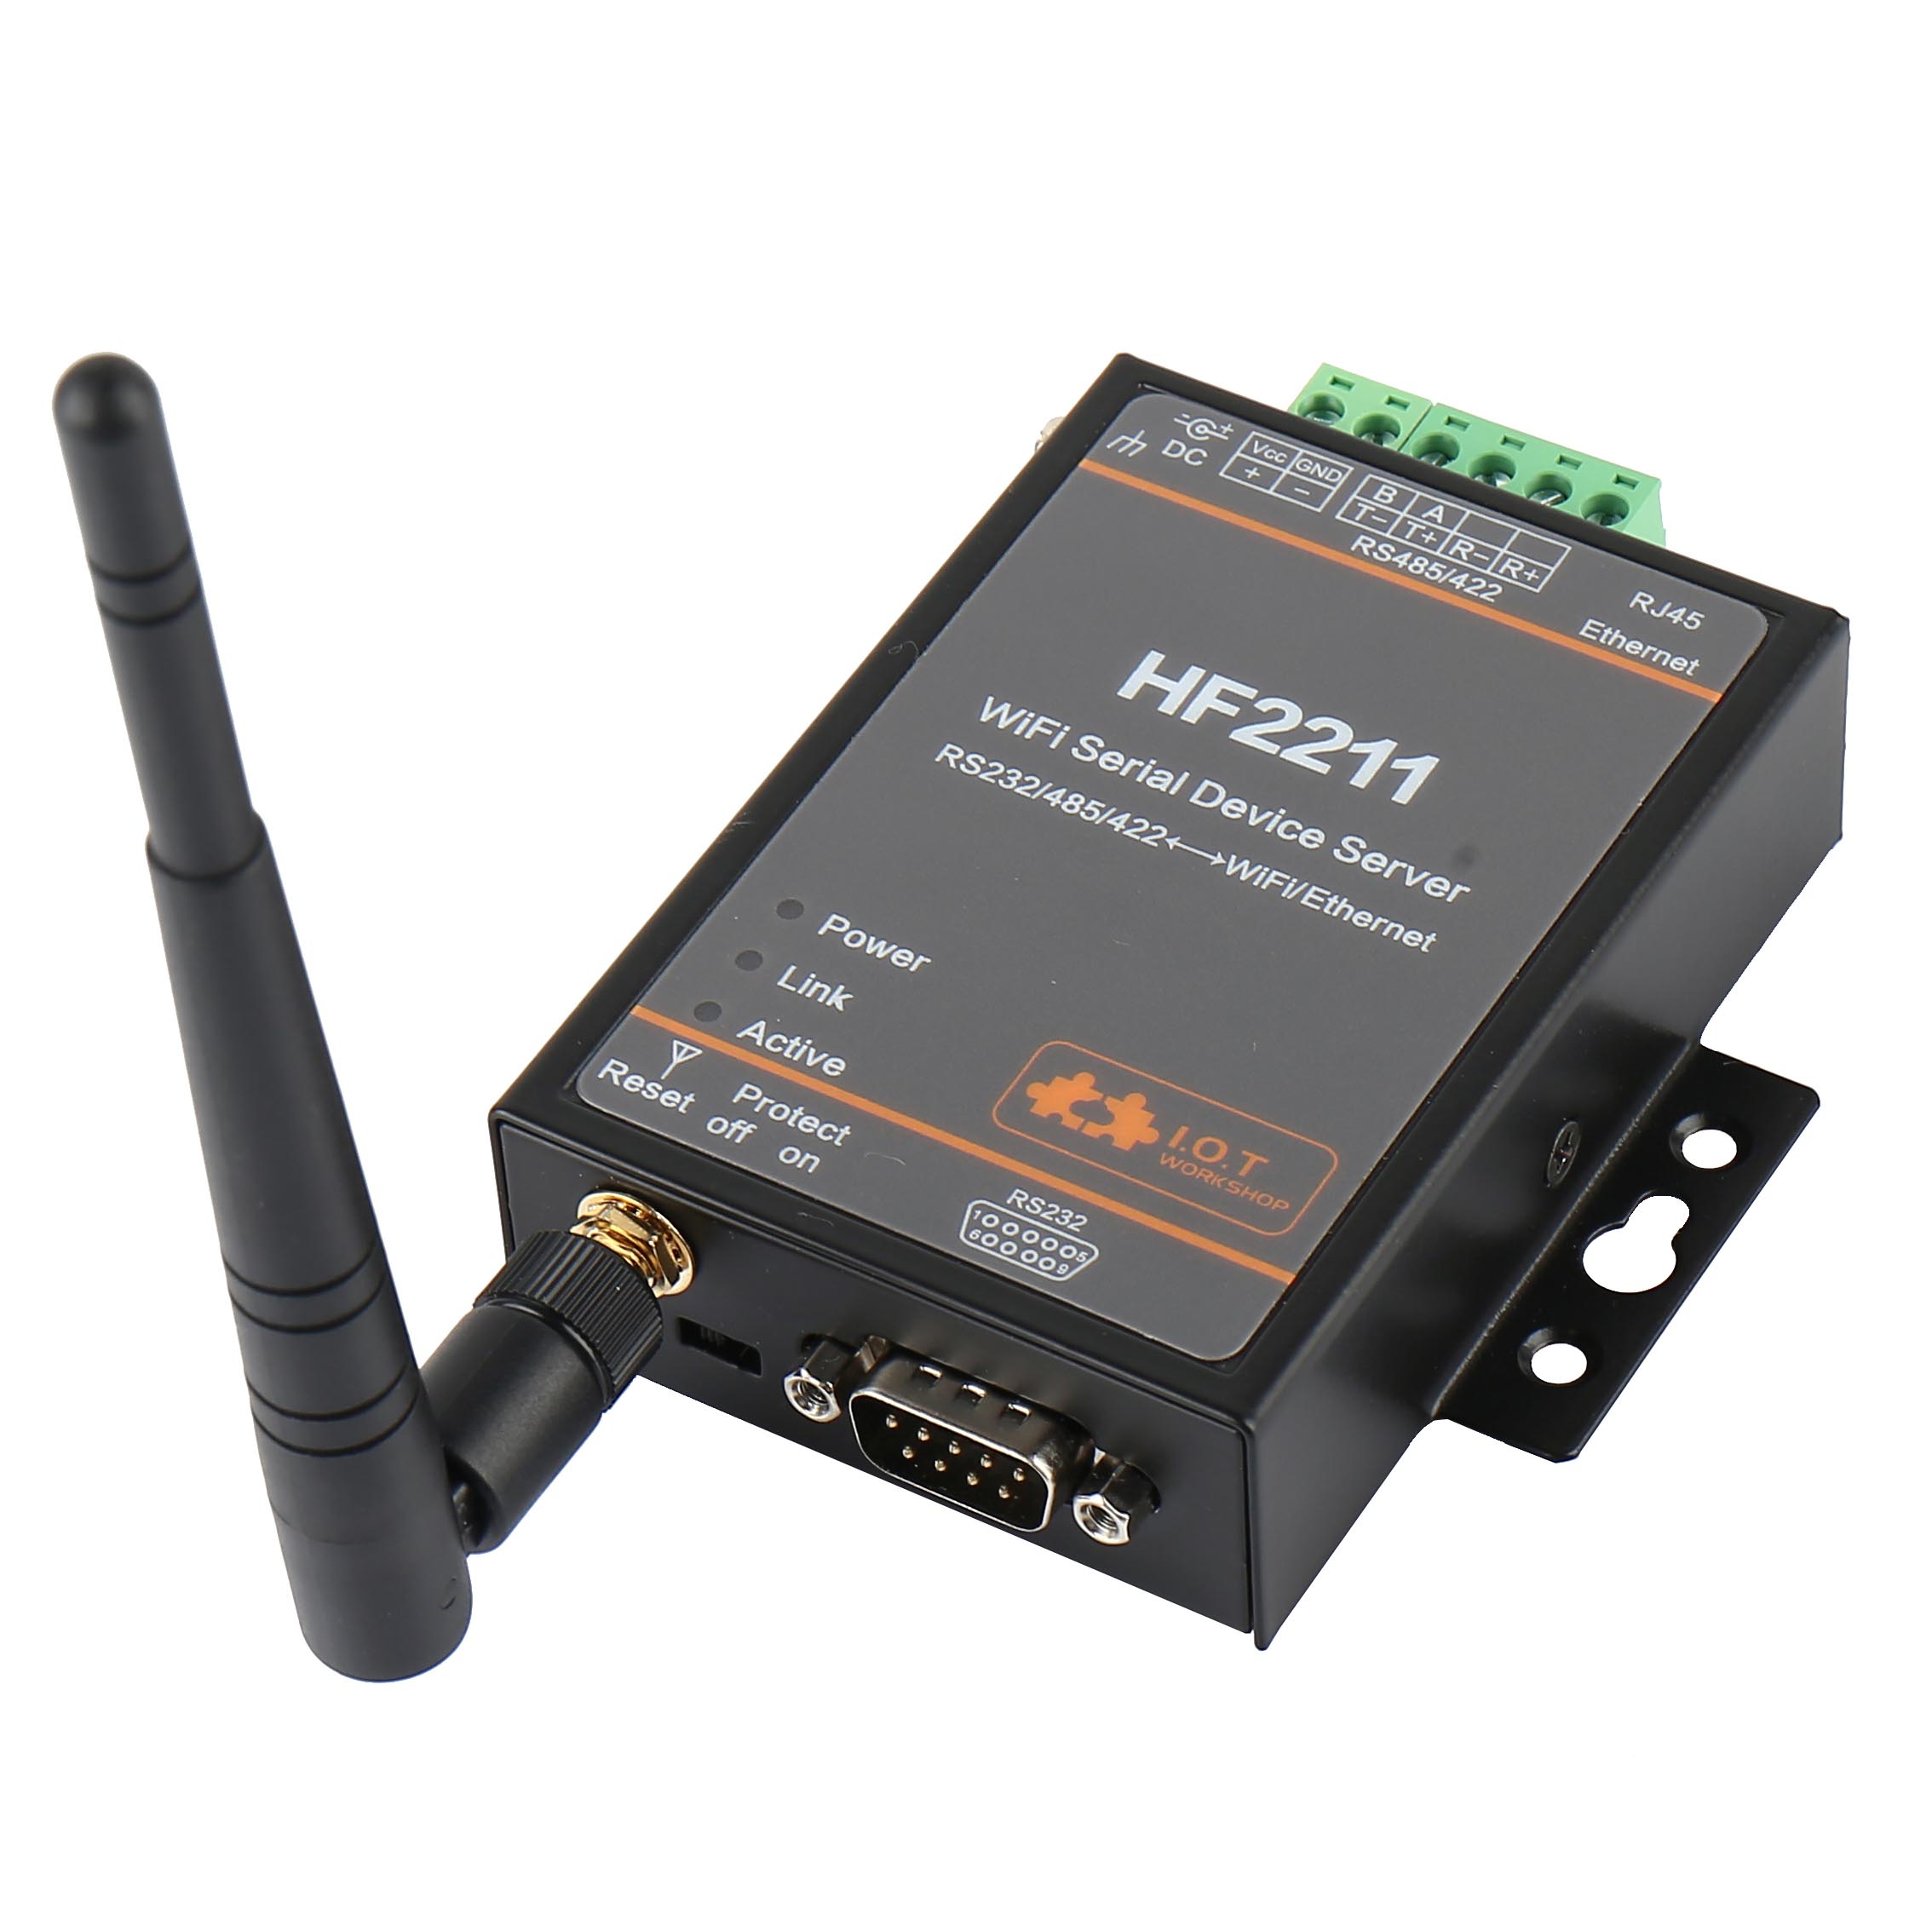 Hf2211 serielt til wifi  rs232/rs485/rs422 to wifi / ethernet-konvertermodul til industriel automatisering af datatransmission